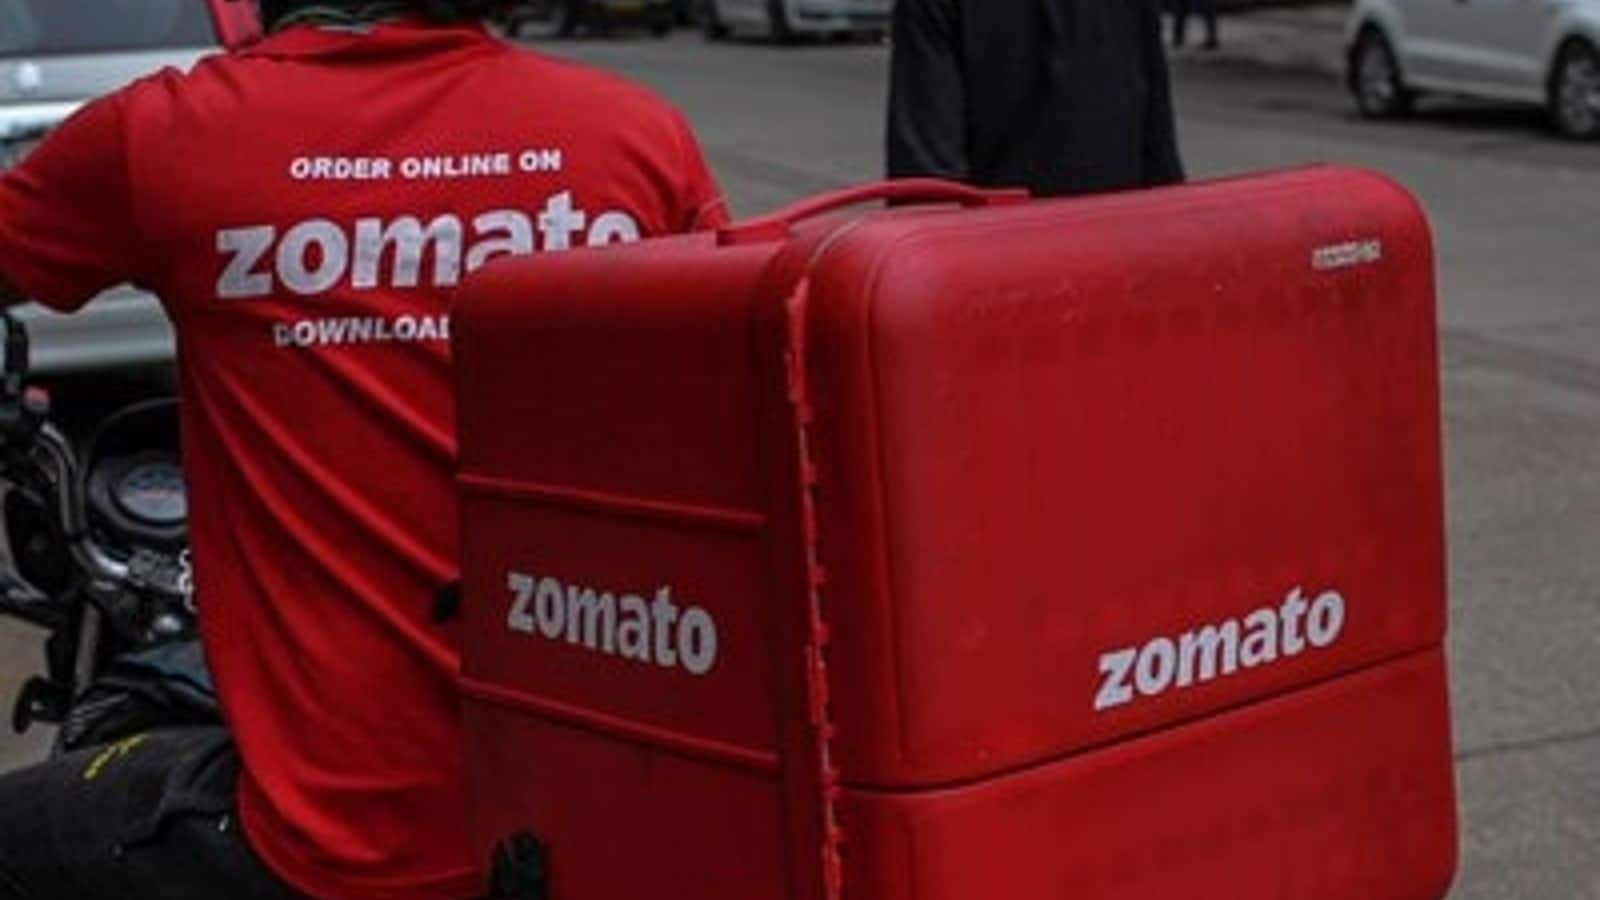 Zomato faces ₹11.82 crore GST demand notice: Here's why